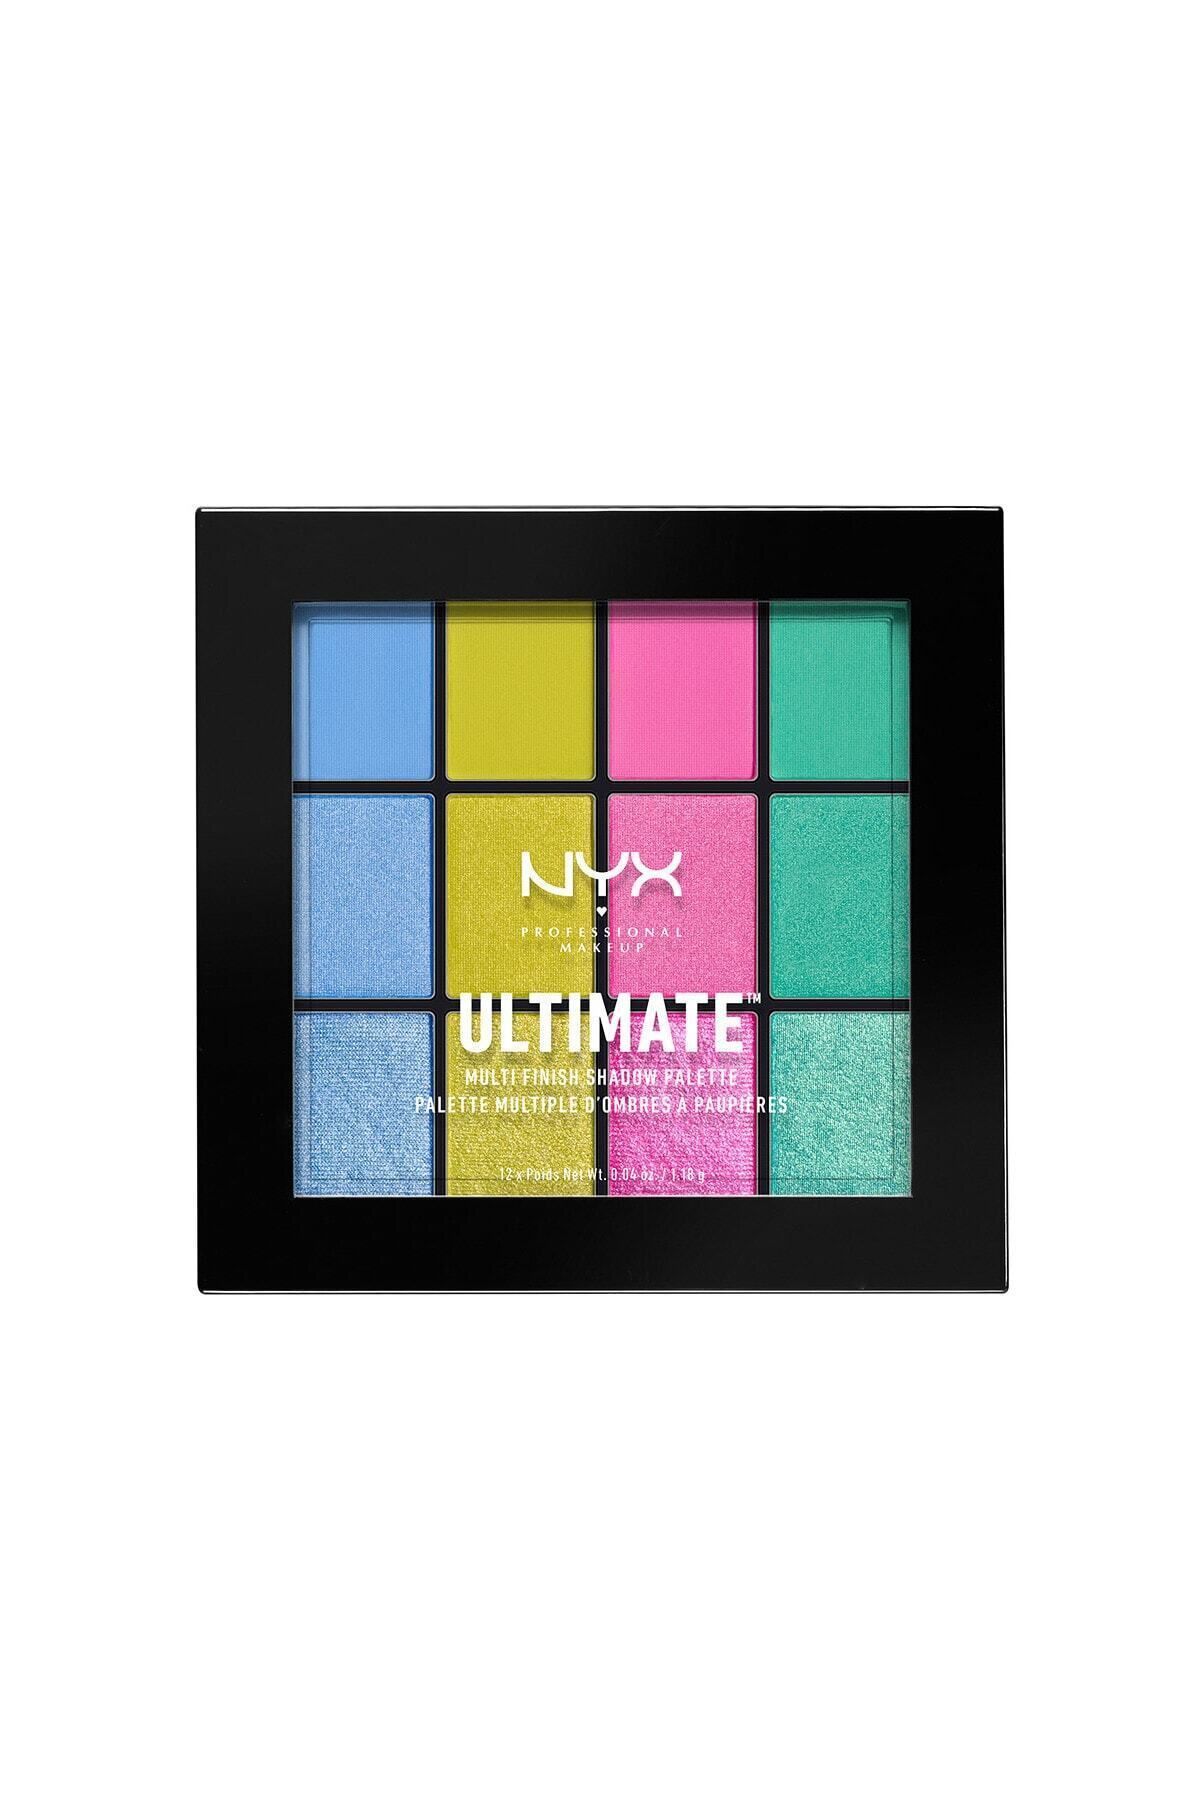 Nyx Ultımate Multı Fınısh Shadow Palette Usp05